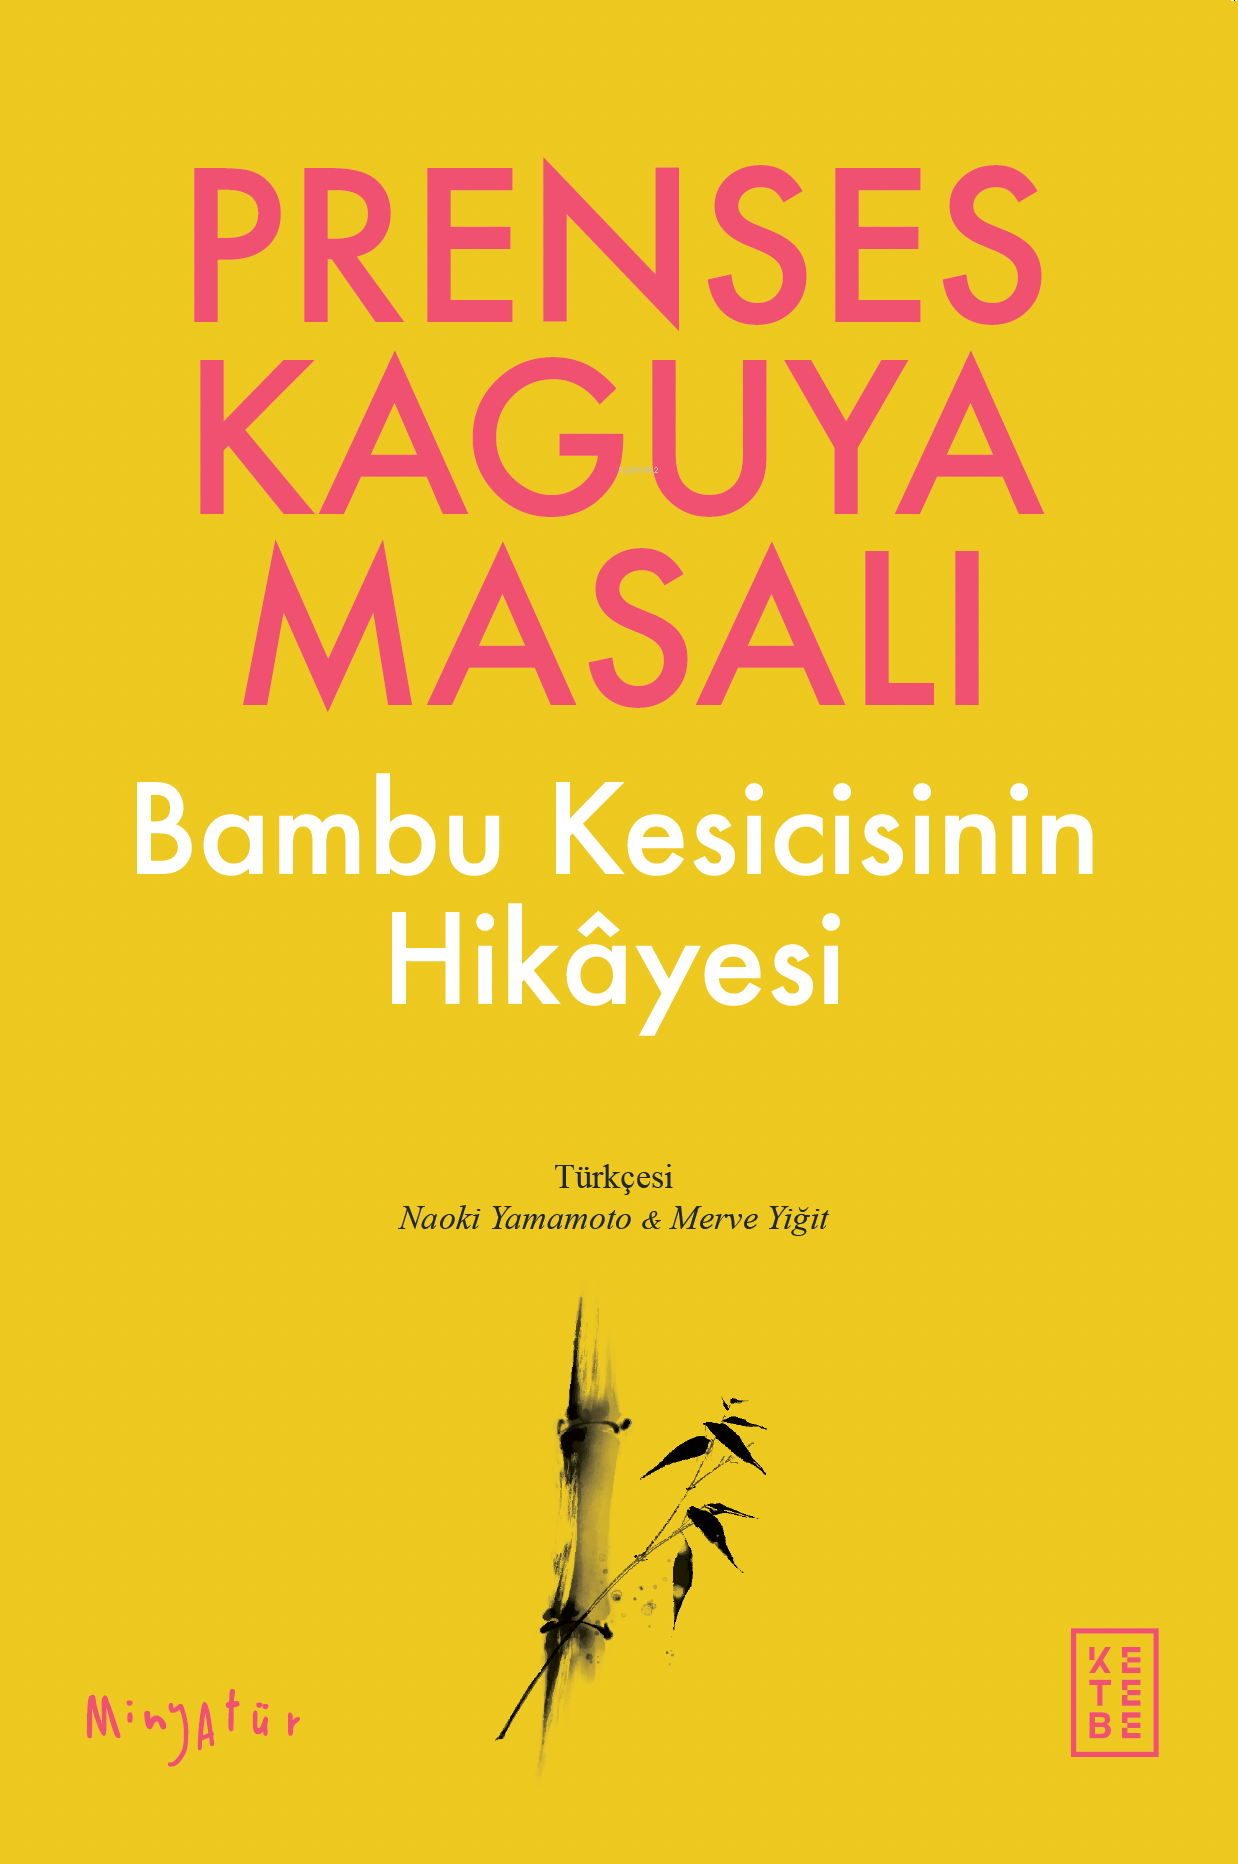 Prenses Kaguya Masalı; Bambu Kesicisinin Hikâyesi